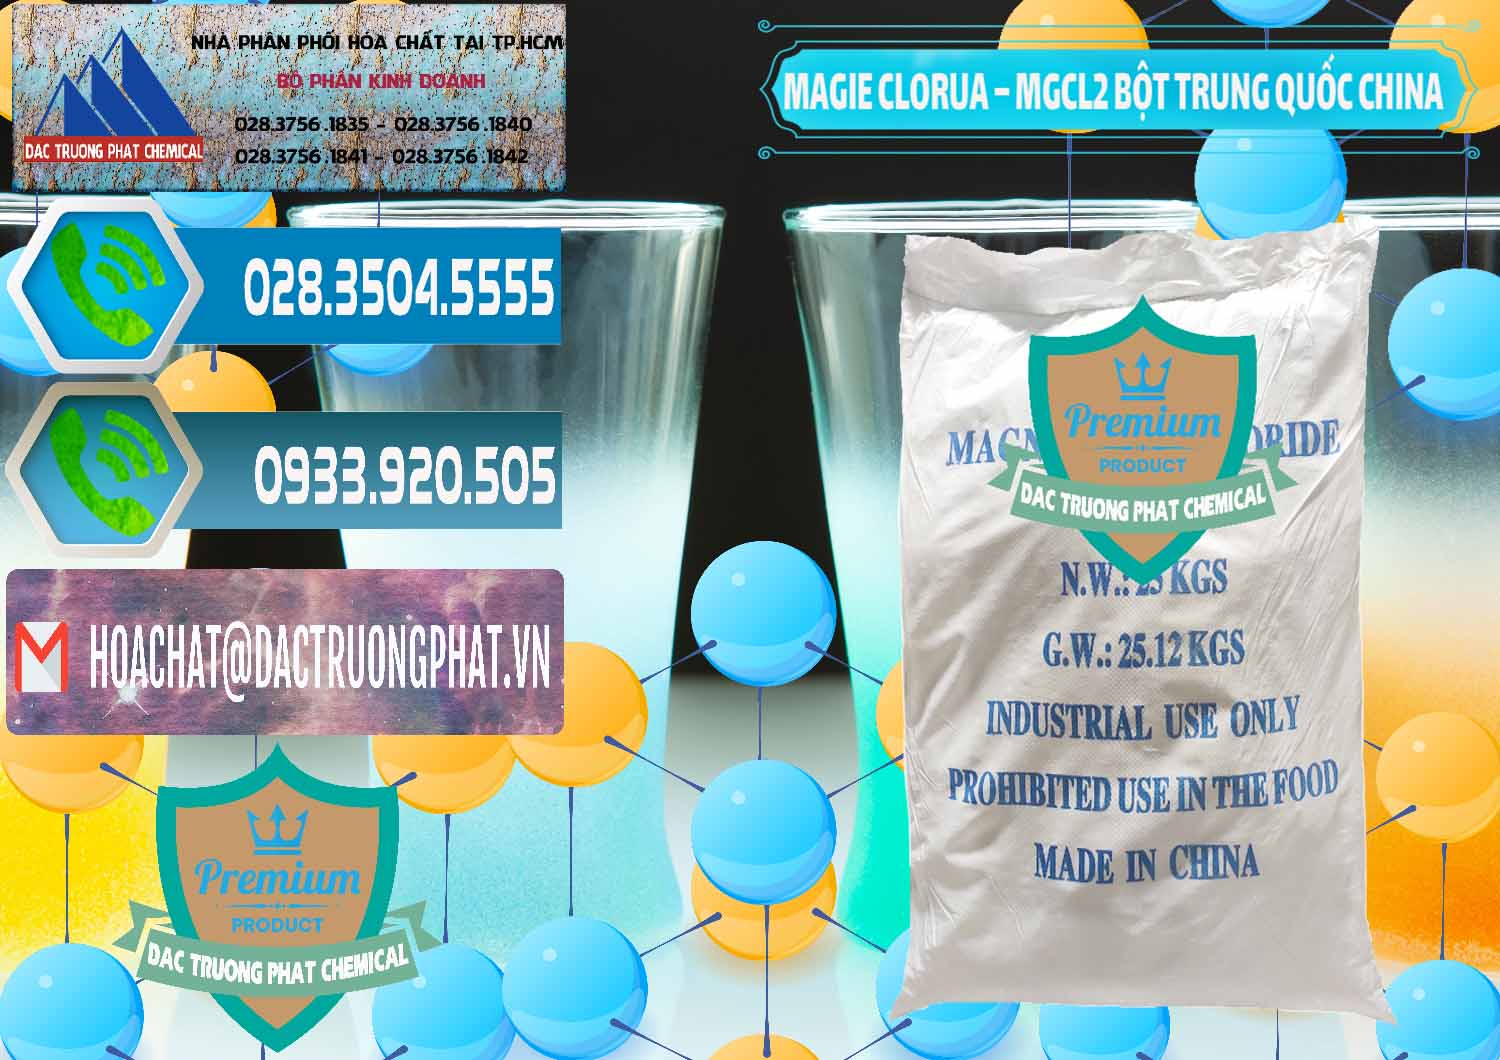 Nhà cung ứng ( bán ) Magie Clorua – MGCL2 96% Dạng Bột Bao Chữ Xanh Trung Quốc China - 0207 - Nơi phân phối _ nhập khẩu hóa chất tại TP.HCM - congtyhoachat.net